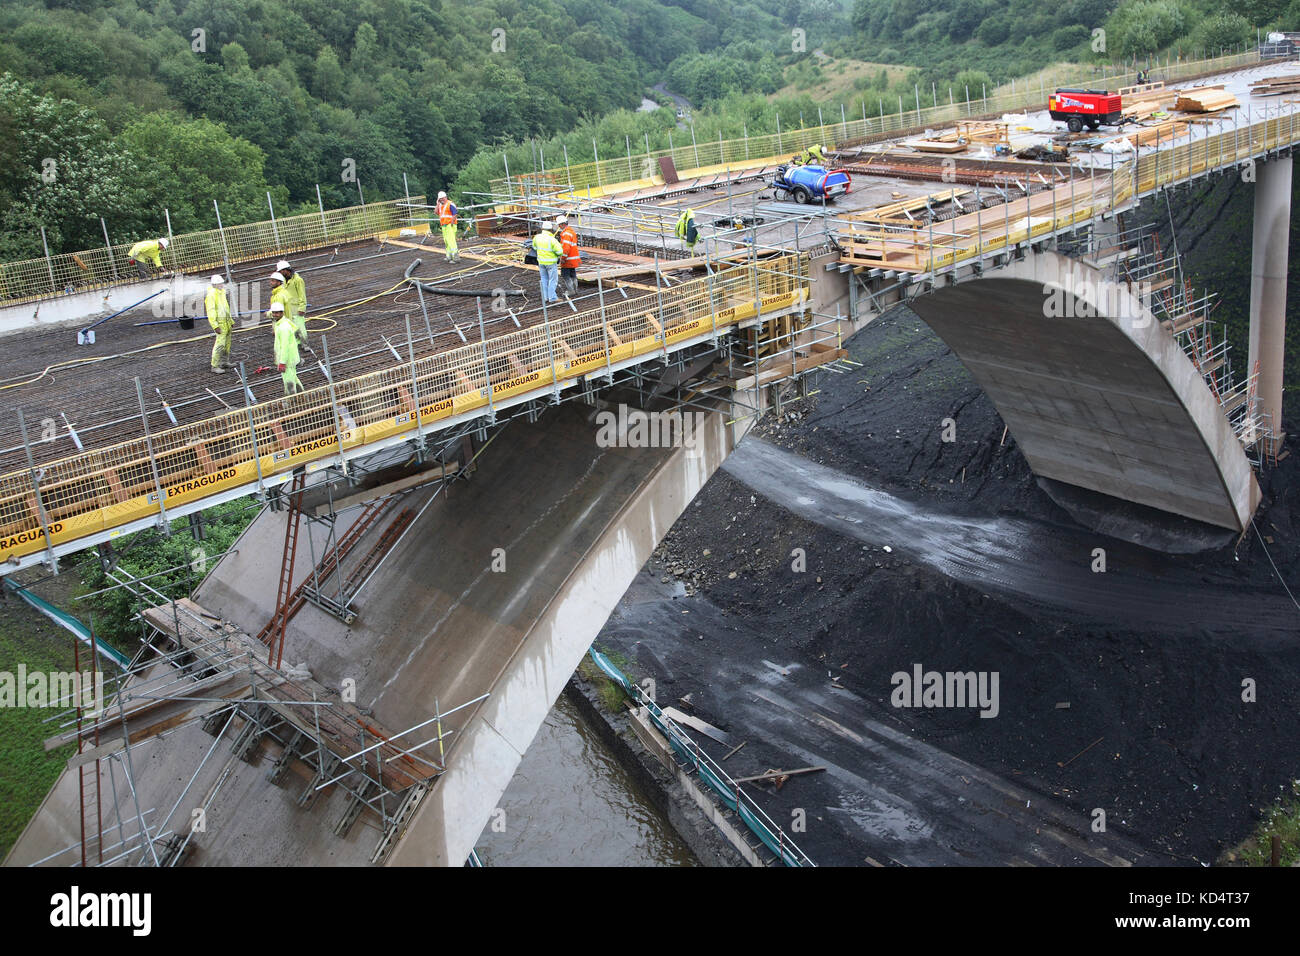 Un nouveau pont routier en béton est en construction à Bargoed, au sud du pays de Galles, au Royaume-Uni. Fait partie d'une initiative de développement financée par le gouvernement et la CEE. Banque D'Images